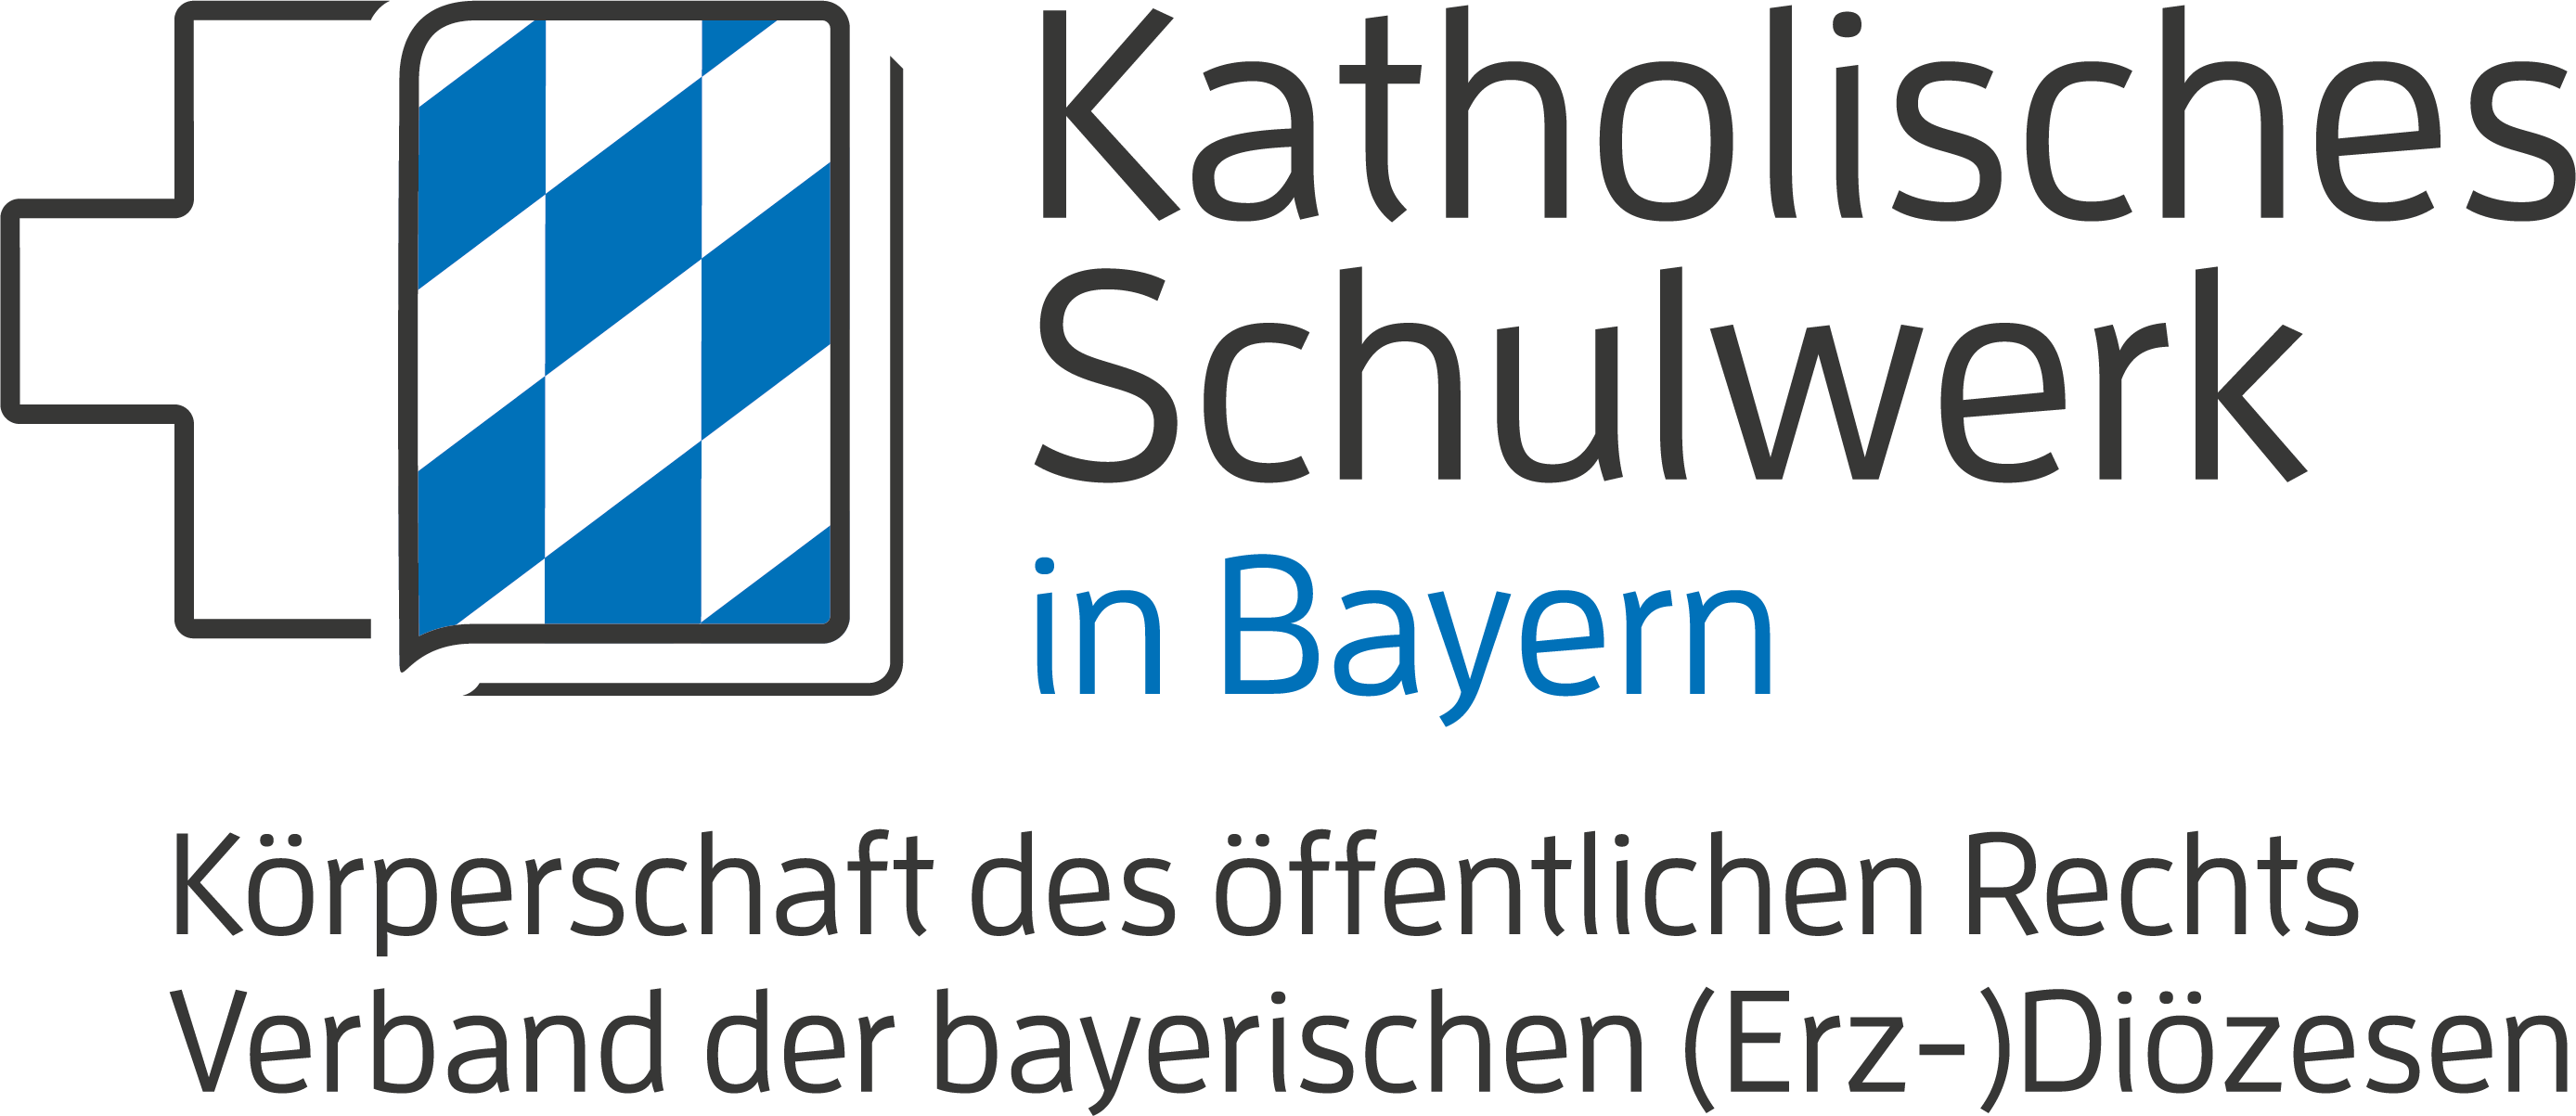 Katholisches Schulwerk in Bayern